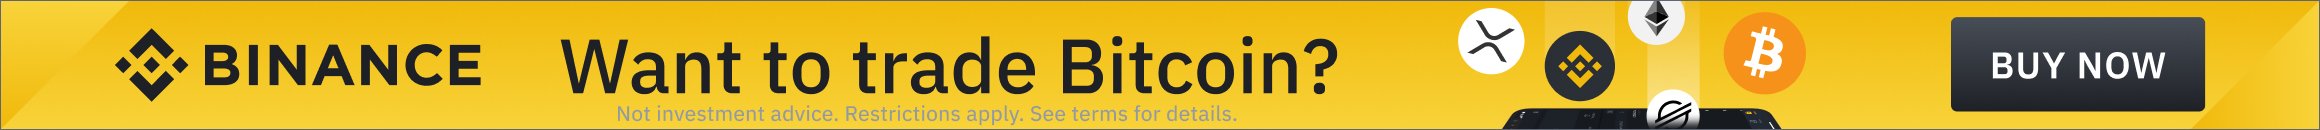 Binance - Want to trade Bitcoin?